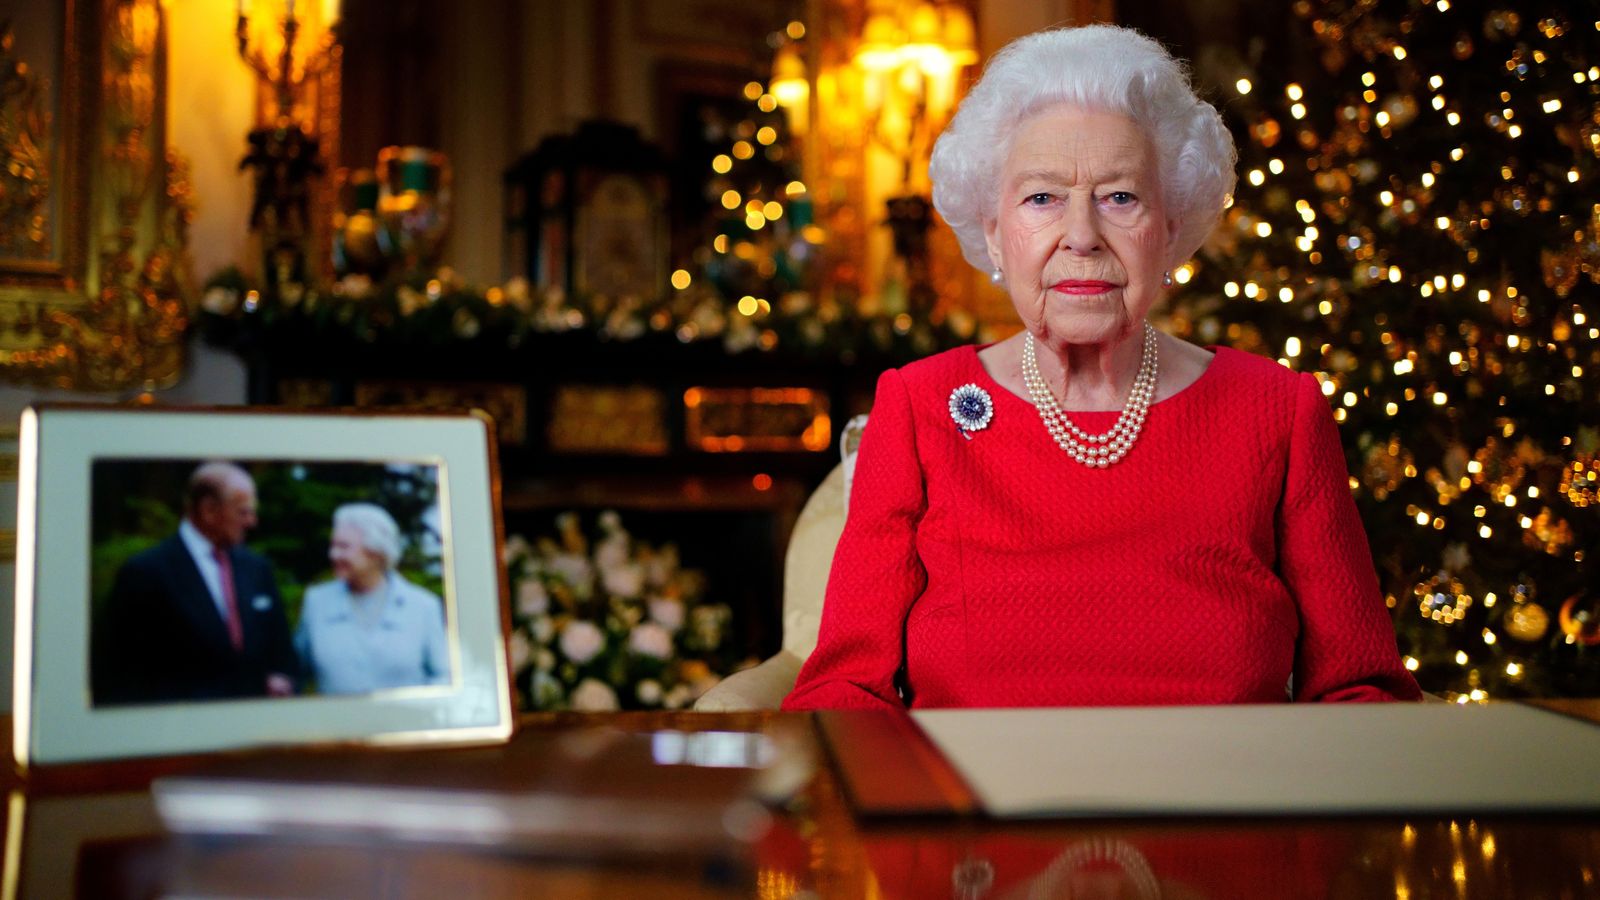 ملكة بريطانيا خلال توجيهها رسالة عيد المبلاد - صورة من قصر باكنغهام 